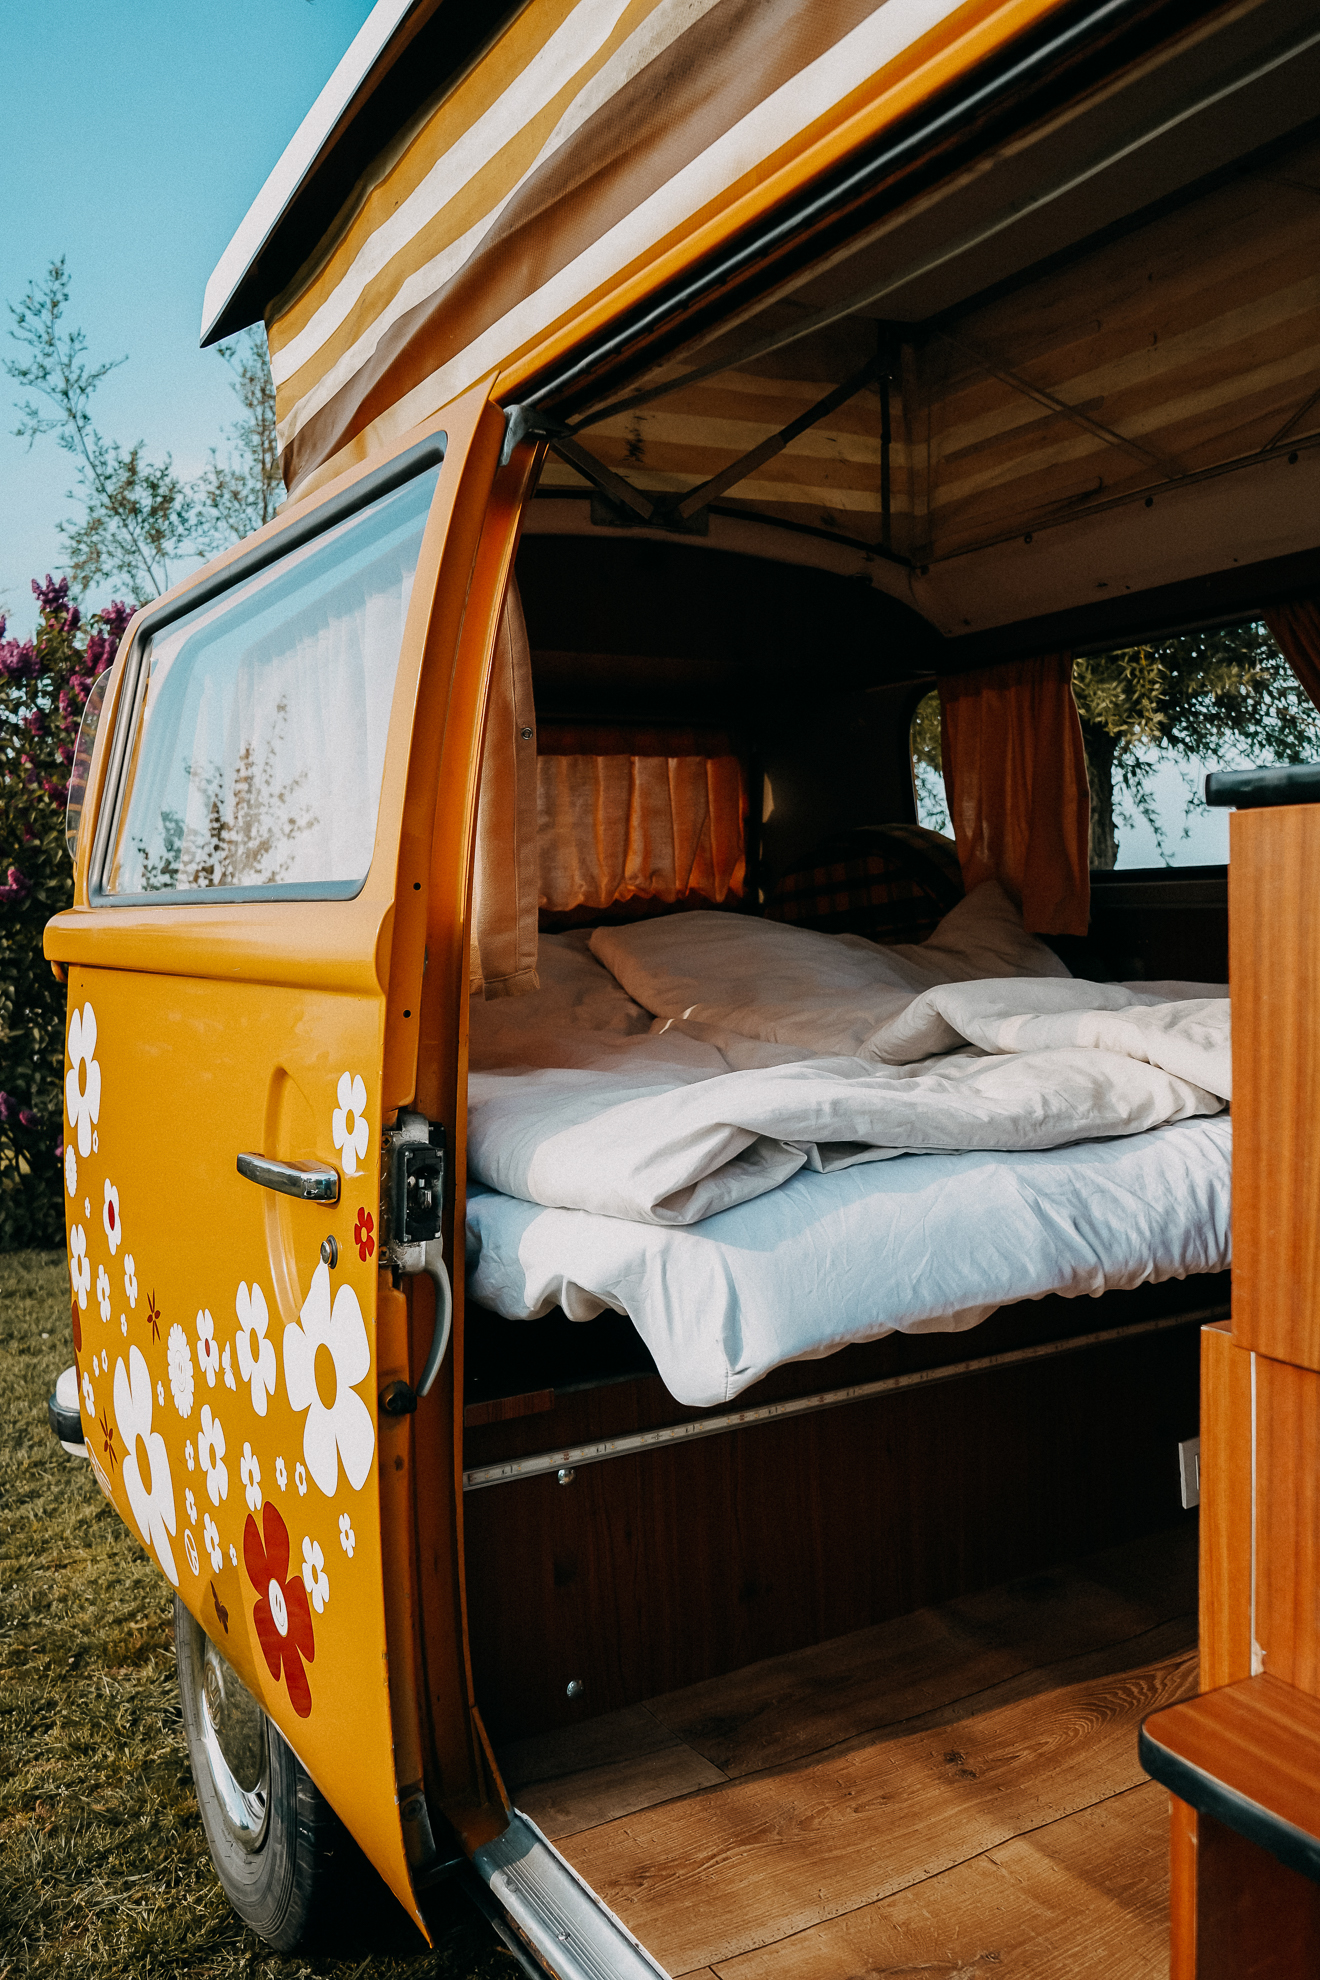 Zeeland Camping Übernachten in einem VW Bulli T2 Reiseblog Holland Camping 2